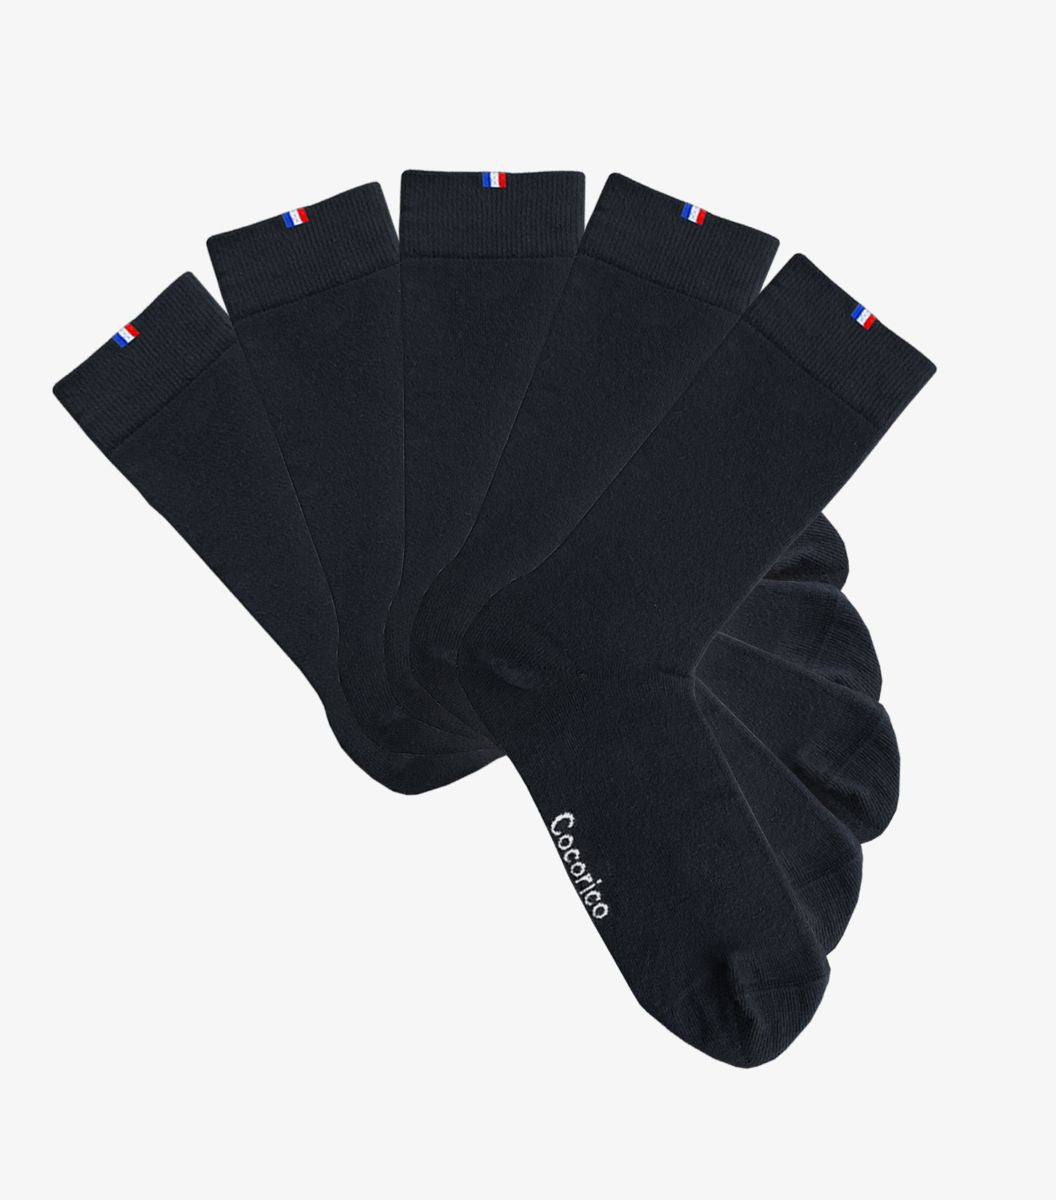 Chaussettes Homme Noir x5 - Le Pack Intemporel